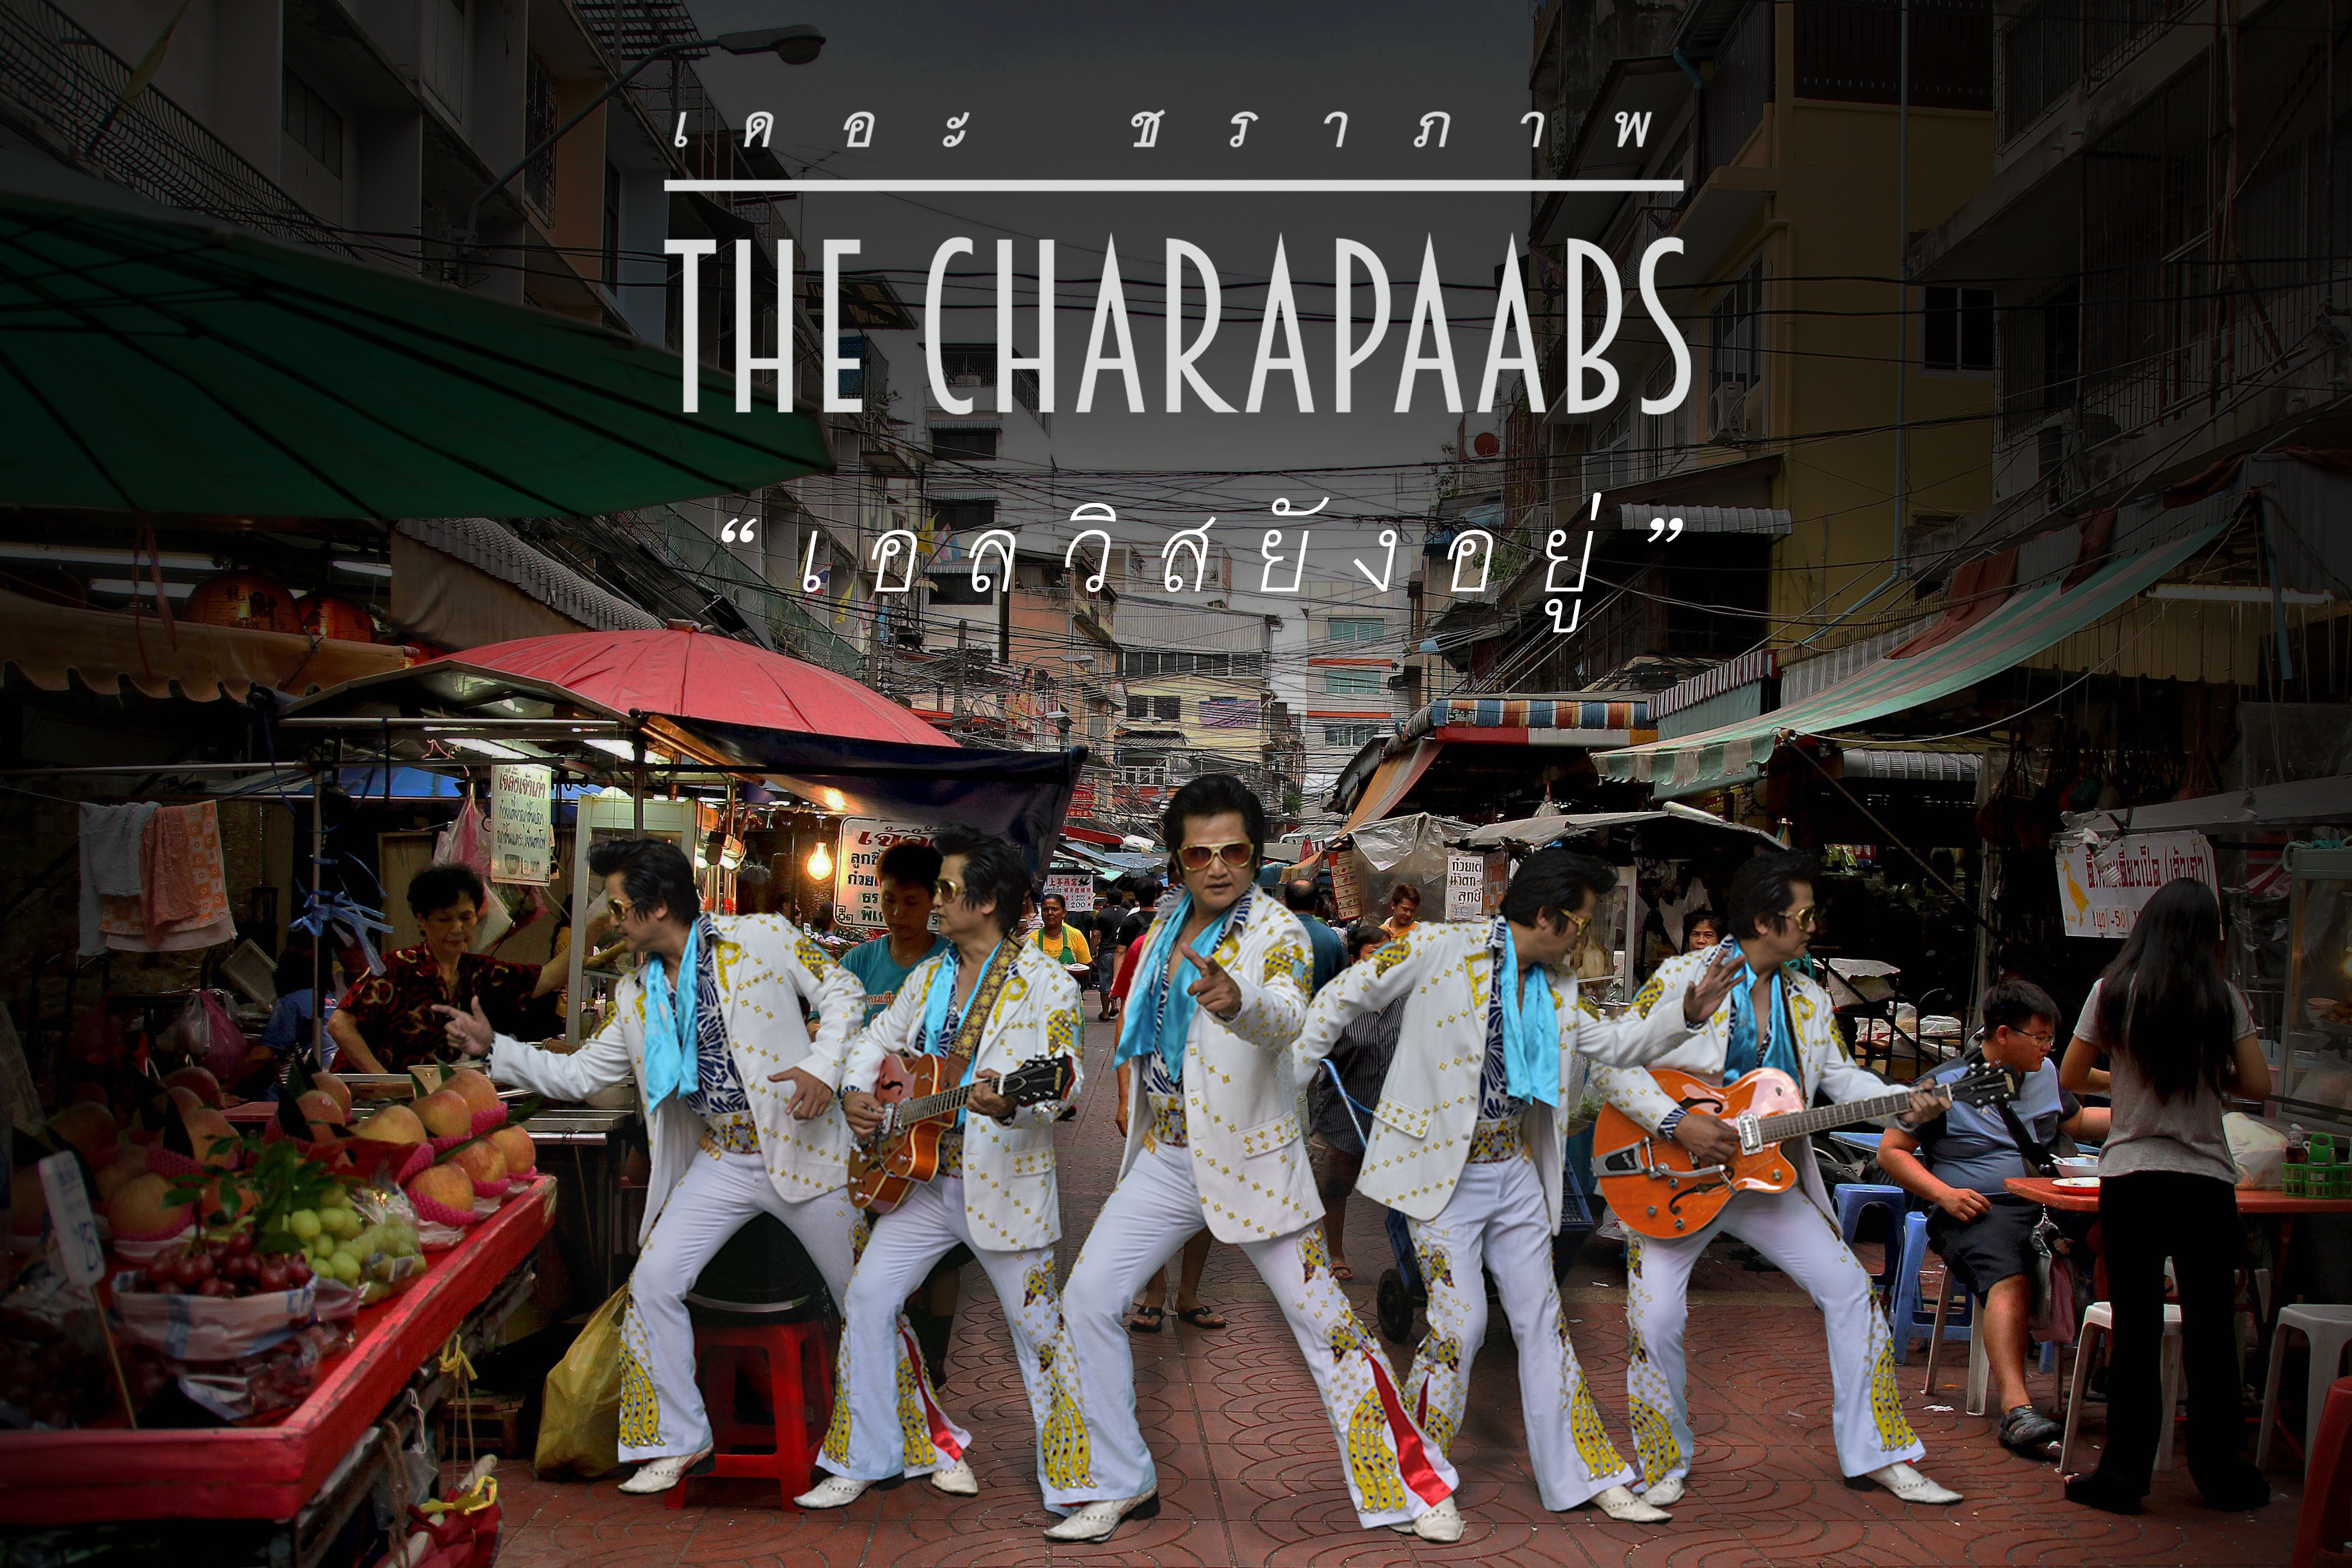 วงคอนเซ็ปต์ The Charapaabs เตรียมปล่อยเพลงใหม่ครบรอบวันจากไปของ Elvis Presley